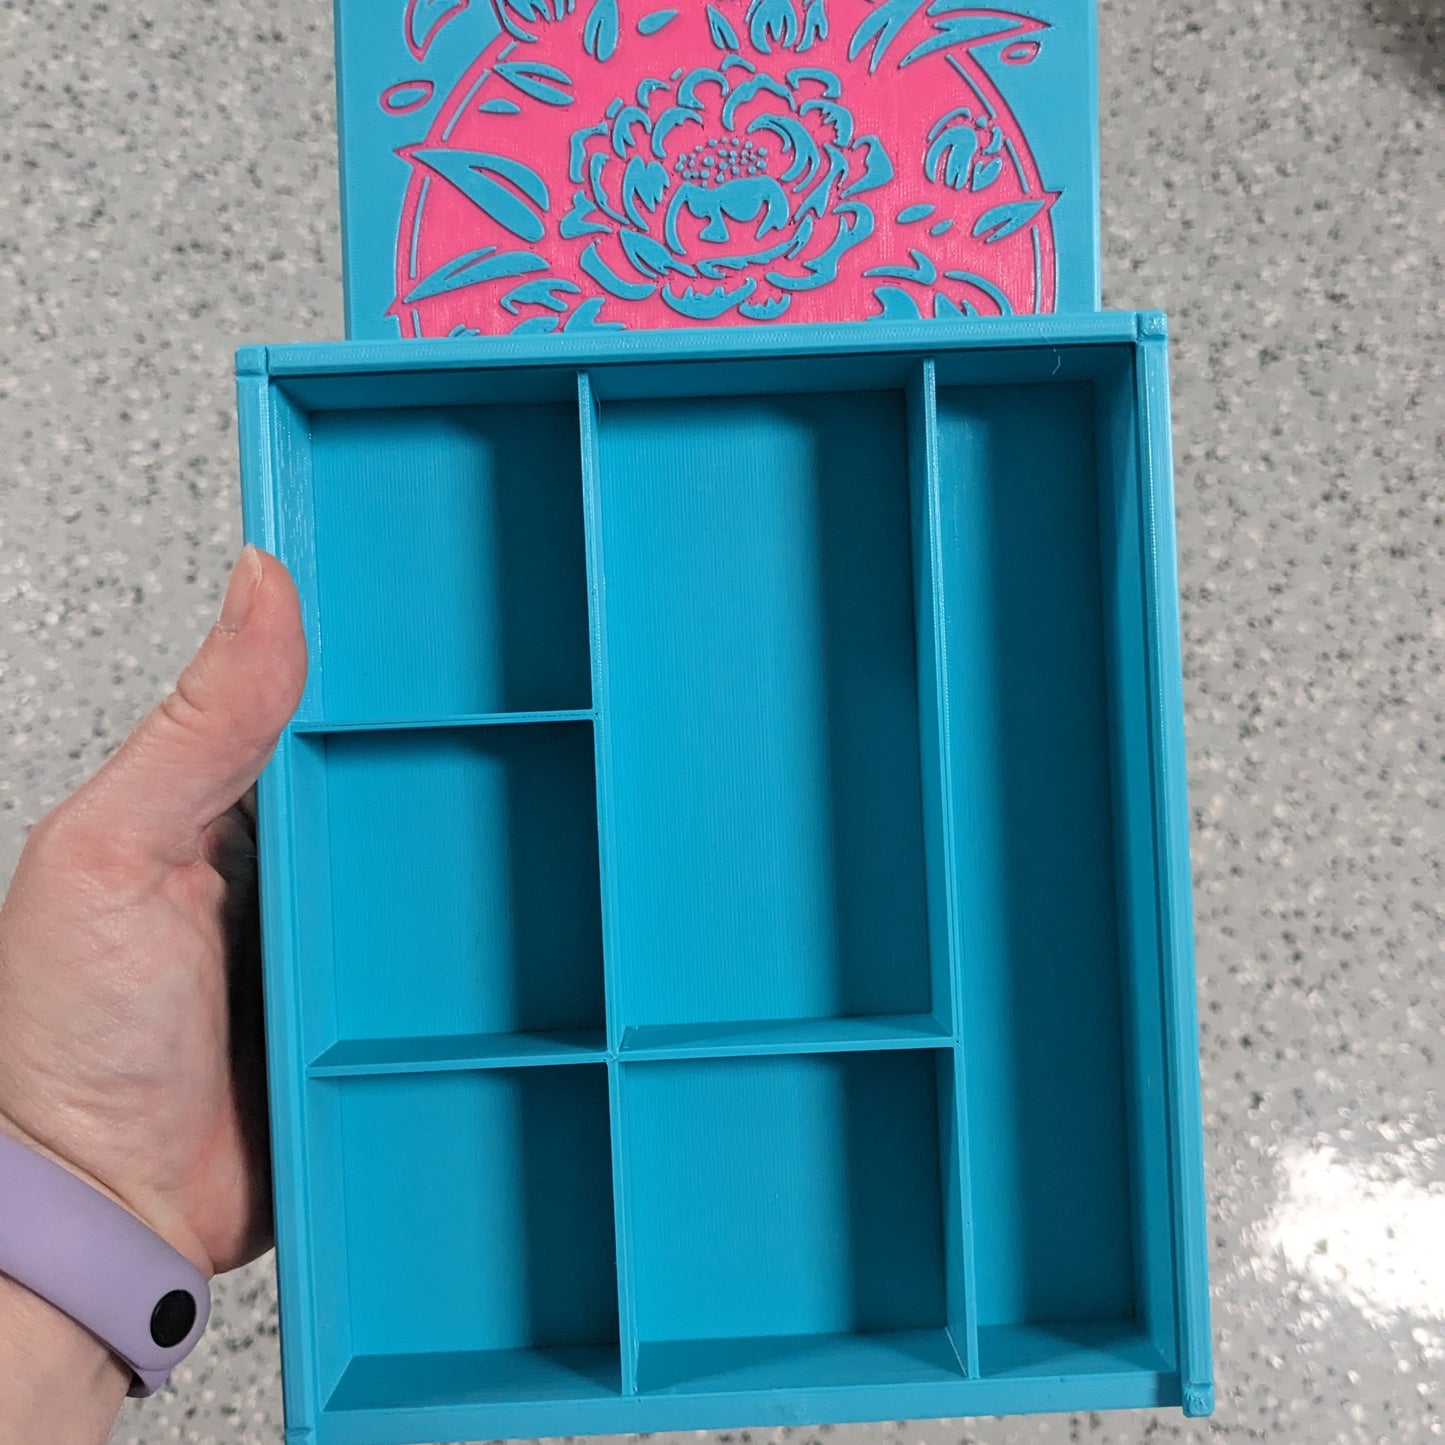 3D printed Notions Box--Peonies